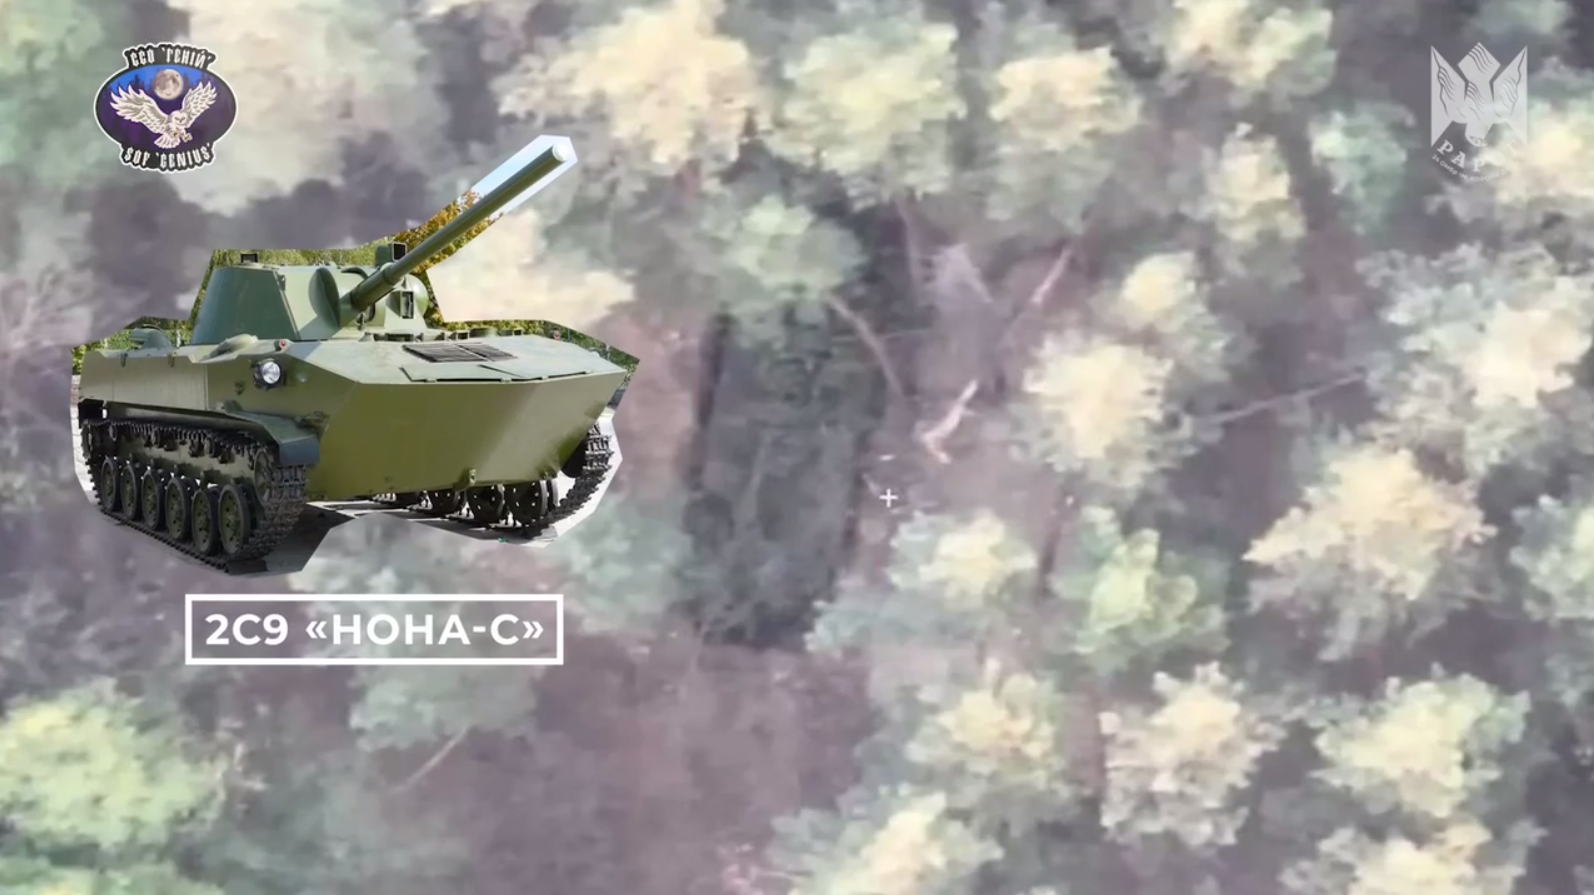 Бойцы ВСУ тремя снайперскими сбросами уничтожили российскую САУ 2С9 "Нона-С". Видео